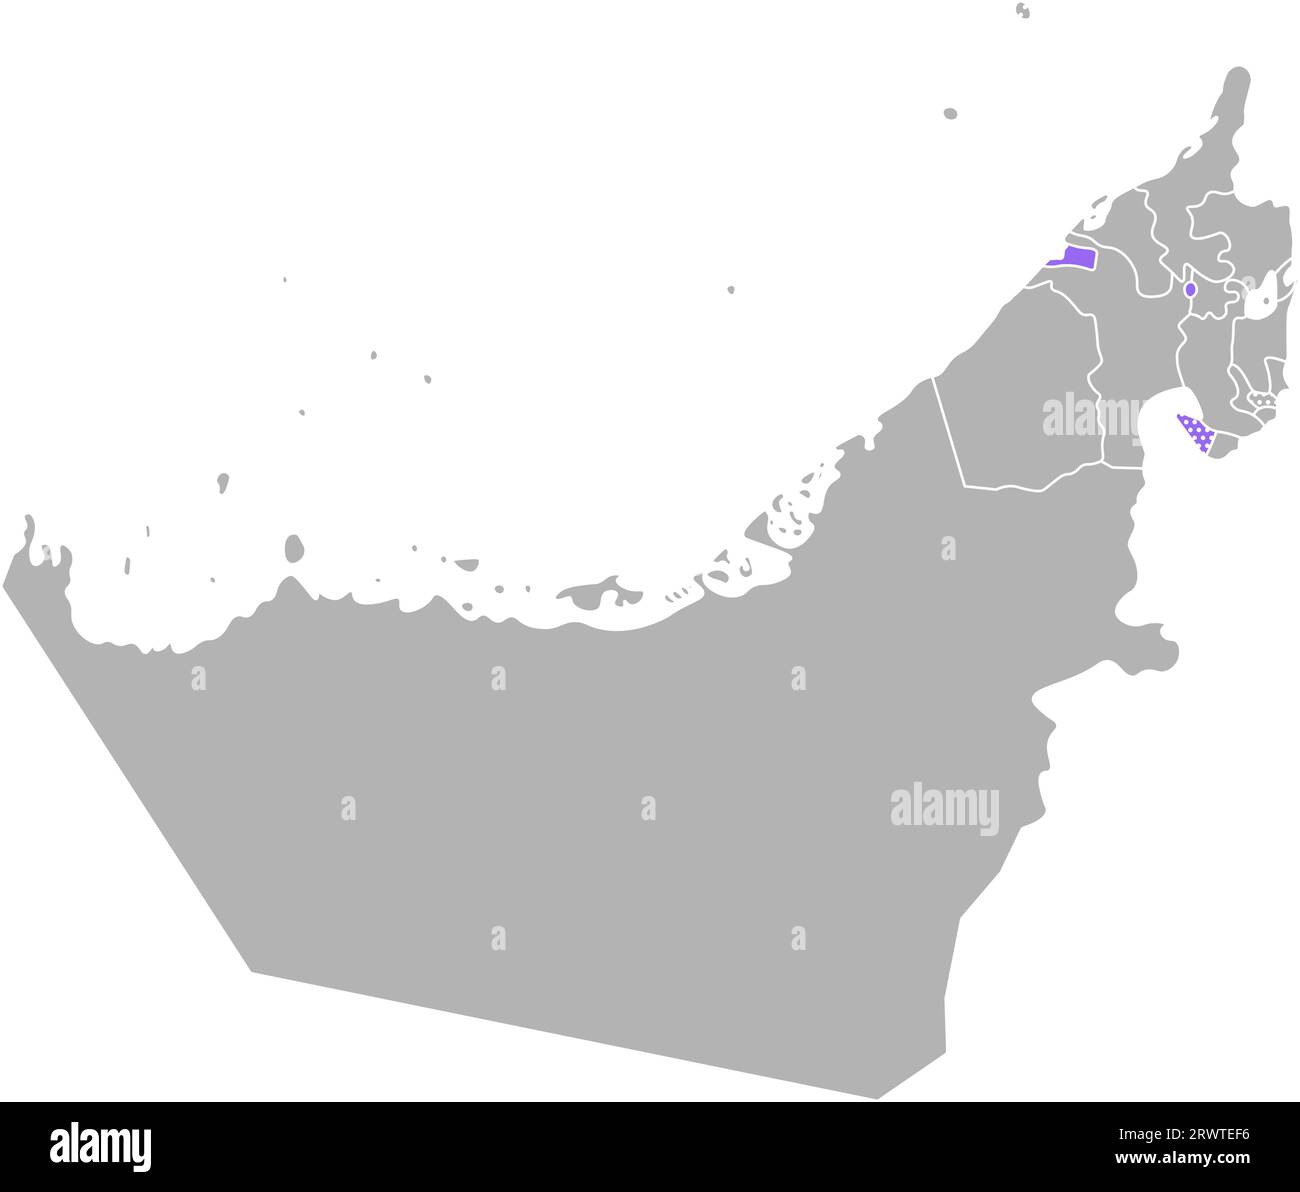 Vektor isolierte vereinfachte bunte Illustration mit grauer Silhouette der Vereinigten Arabischen Emirate (VAE), violetter Kontur der Ajman-Region und weißer Umrandung Stock Vektor